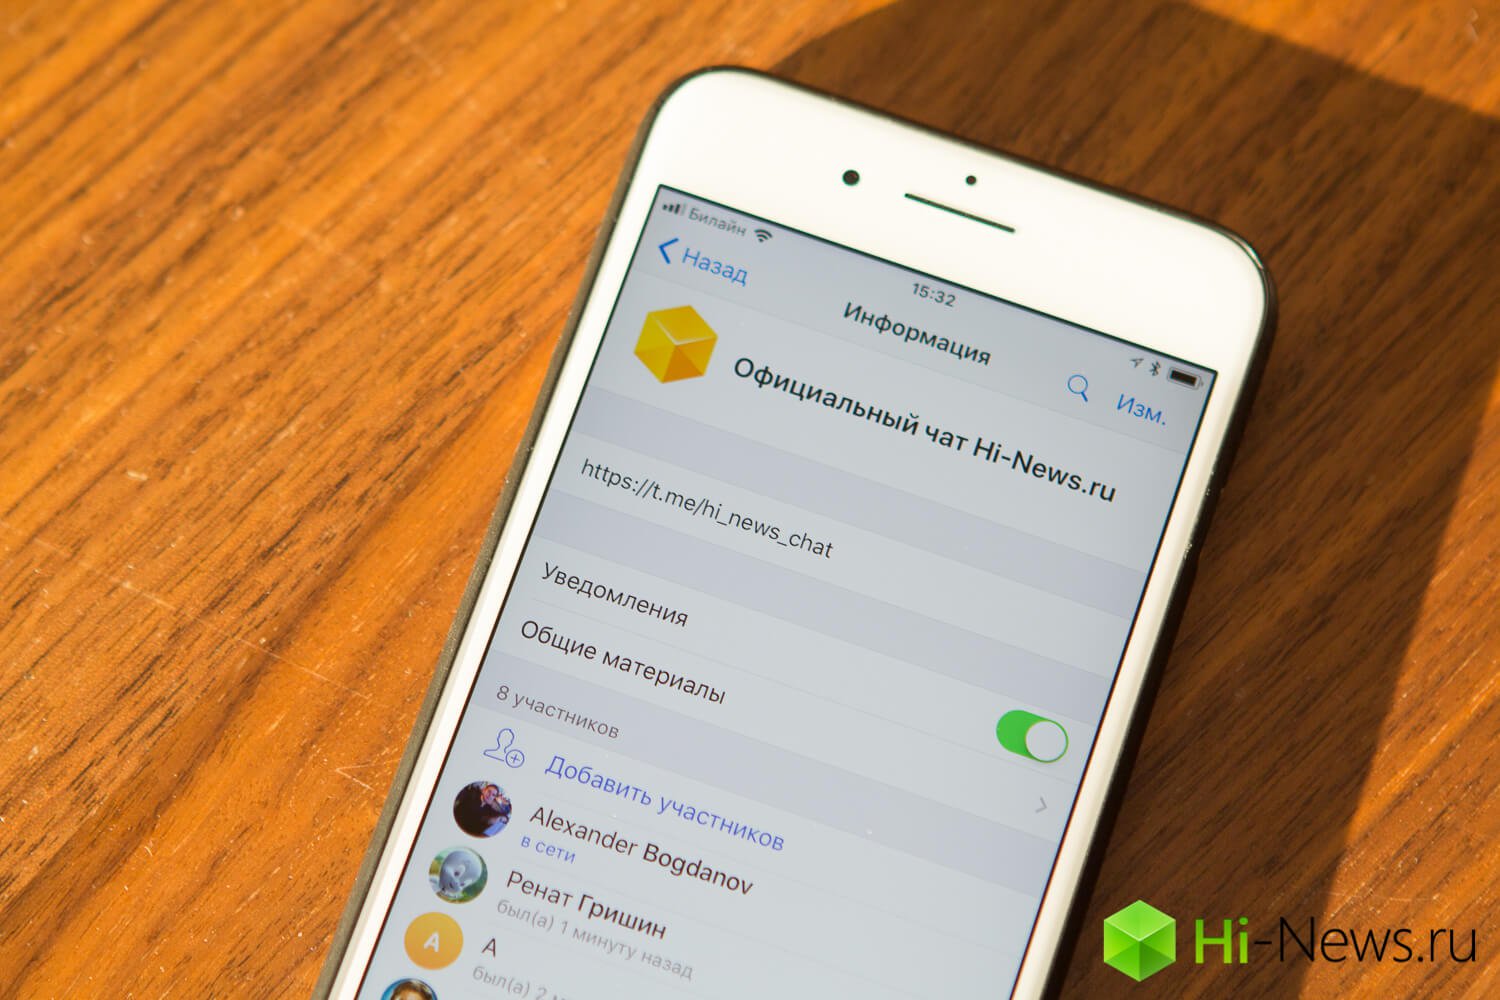 Hi-News.ru inicia oficial de chat en Telegram